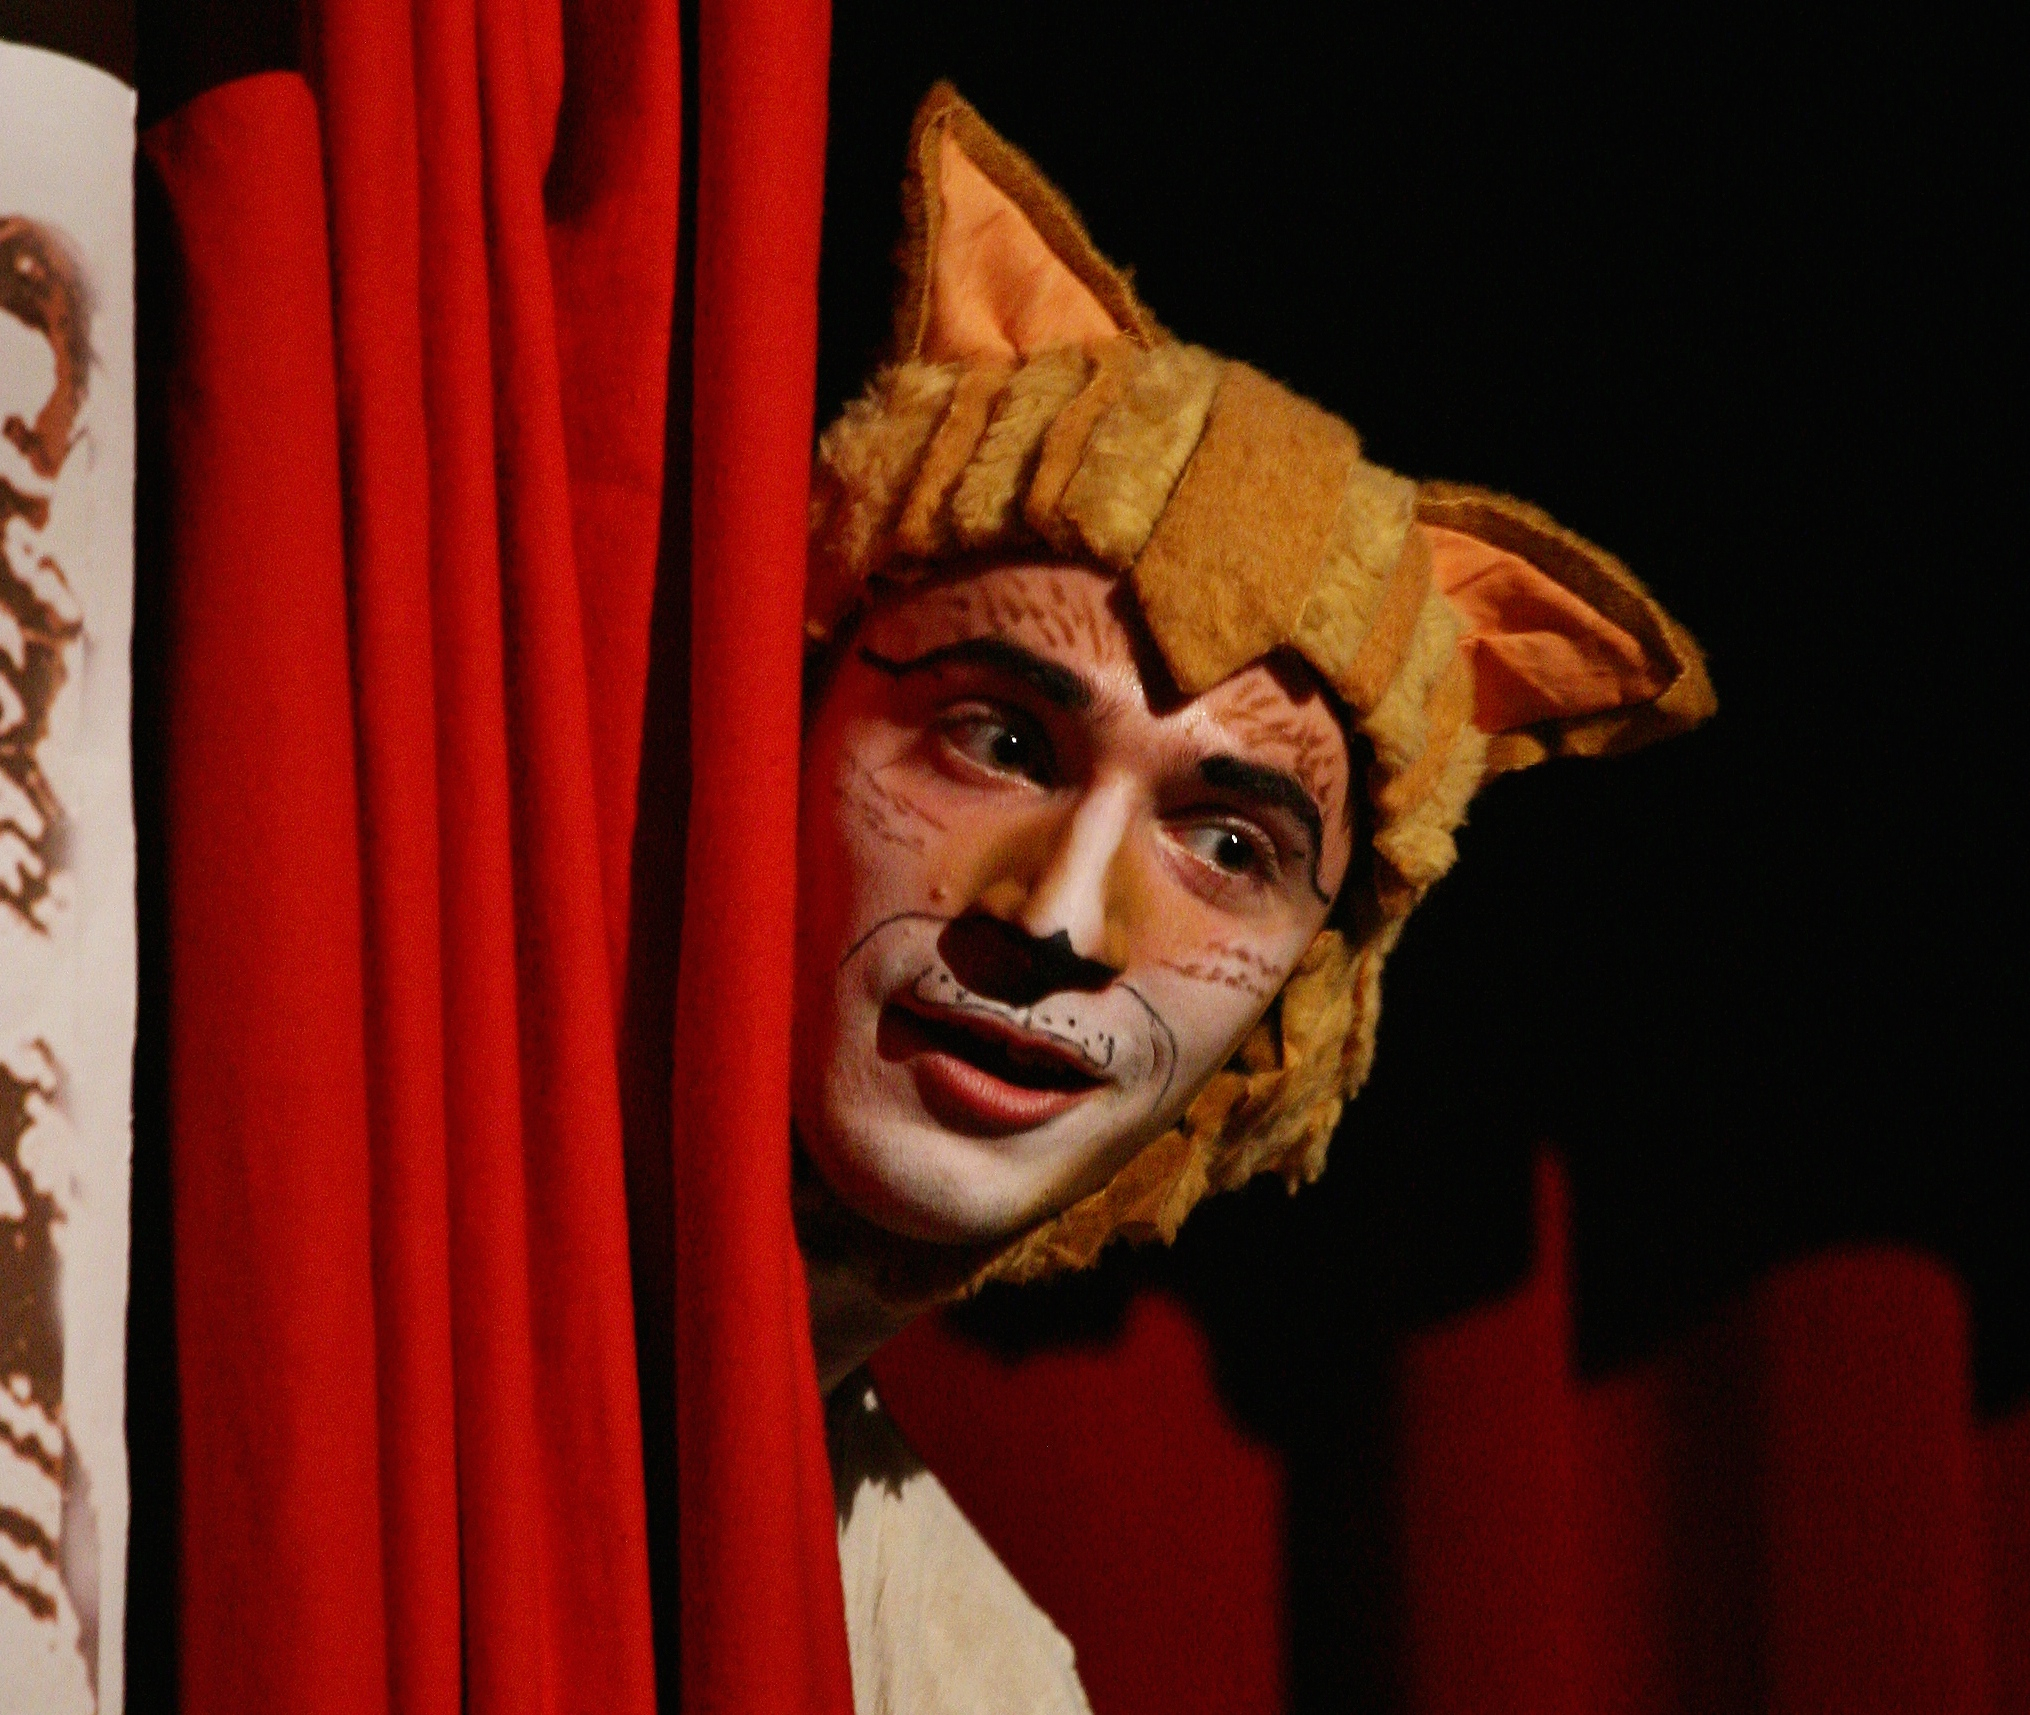 Teatro Manzoni: spettacolo per grandi e piccini, Il Gatto con gli Stivali